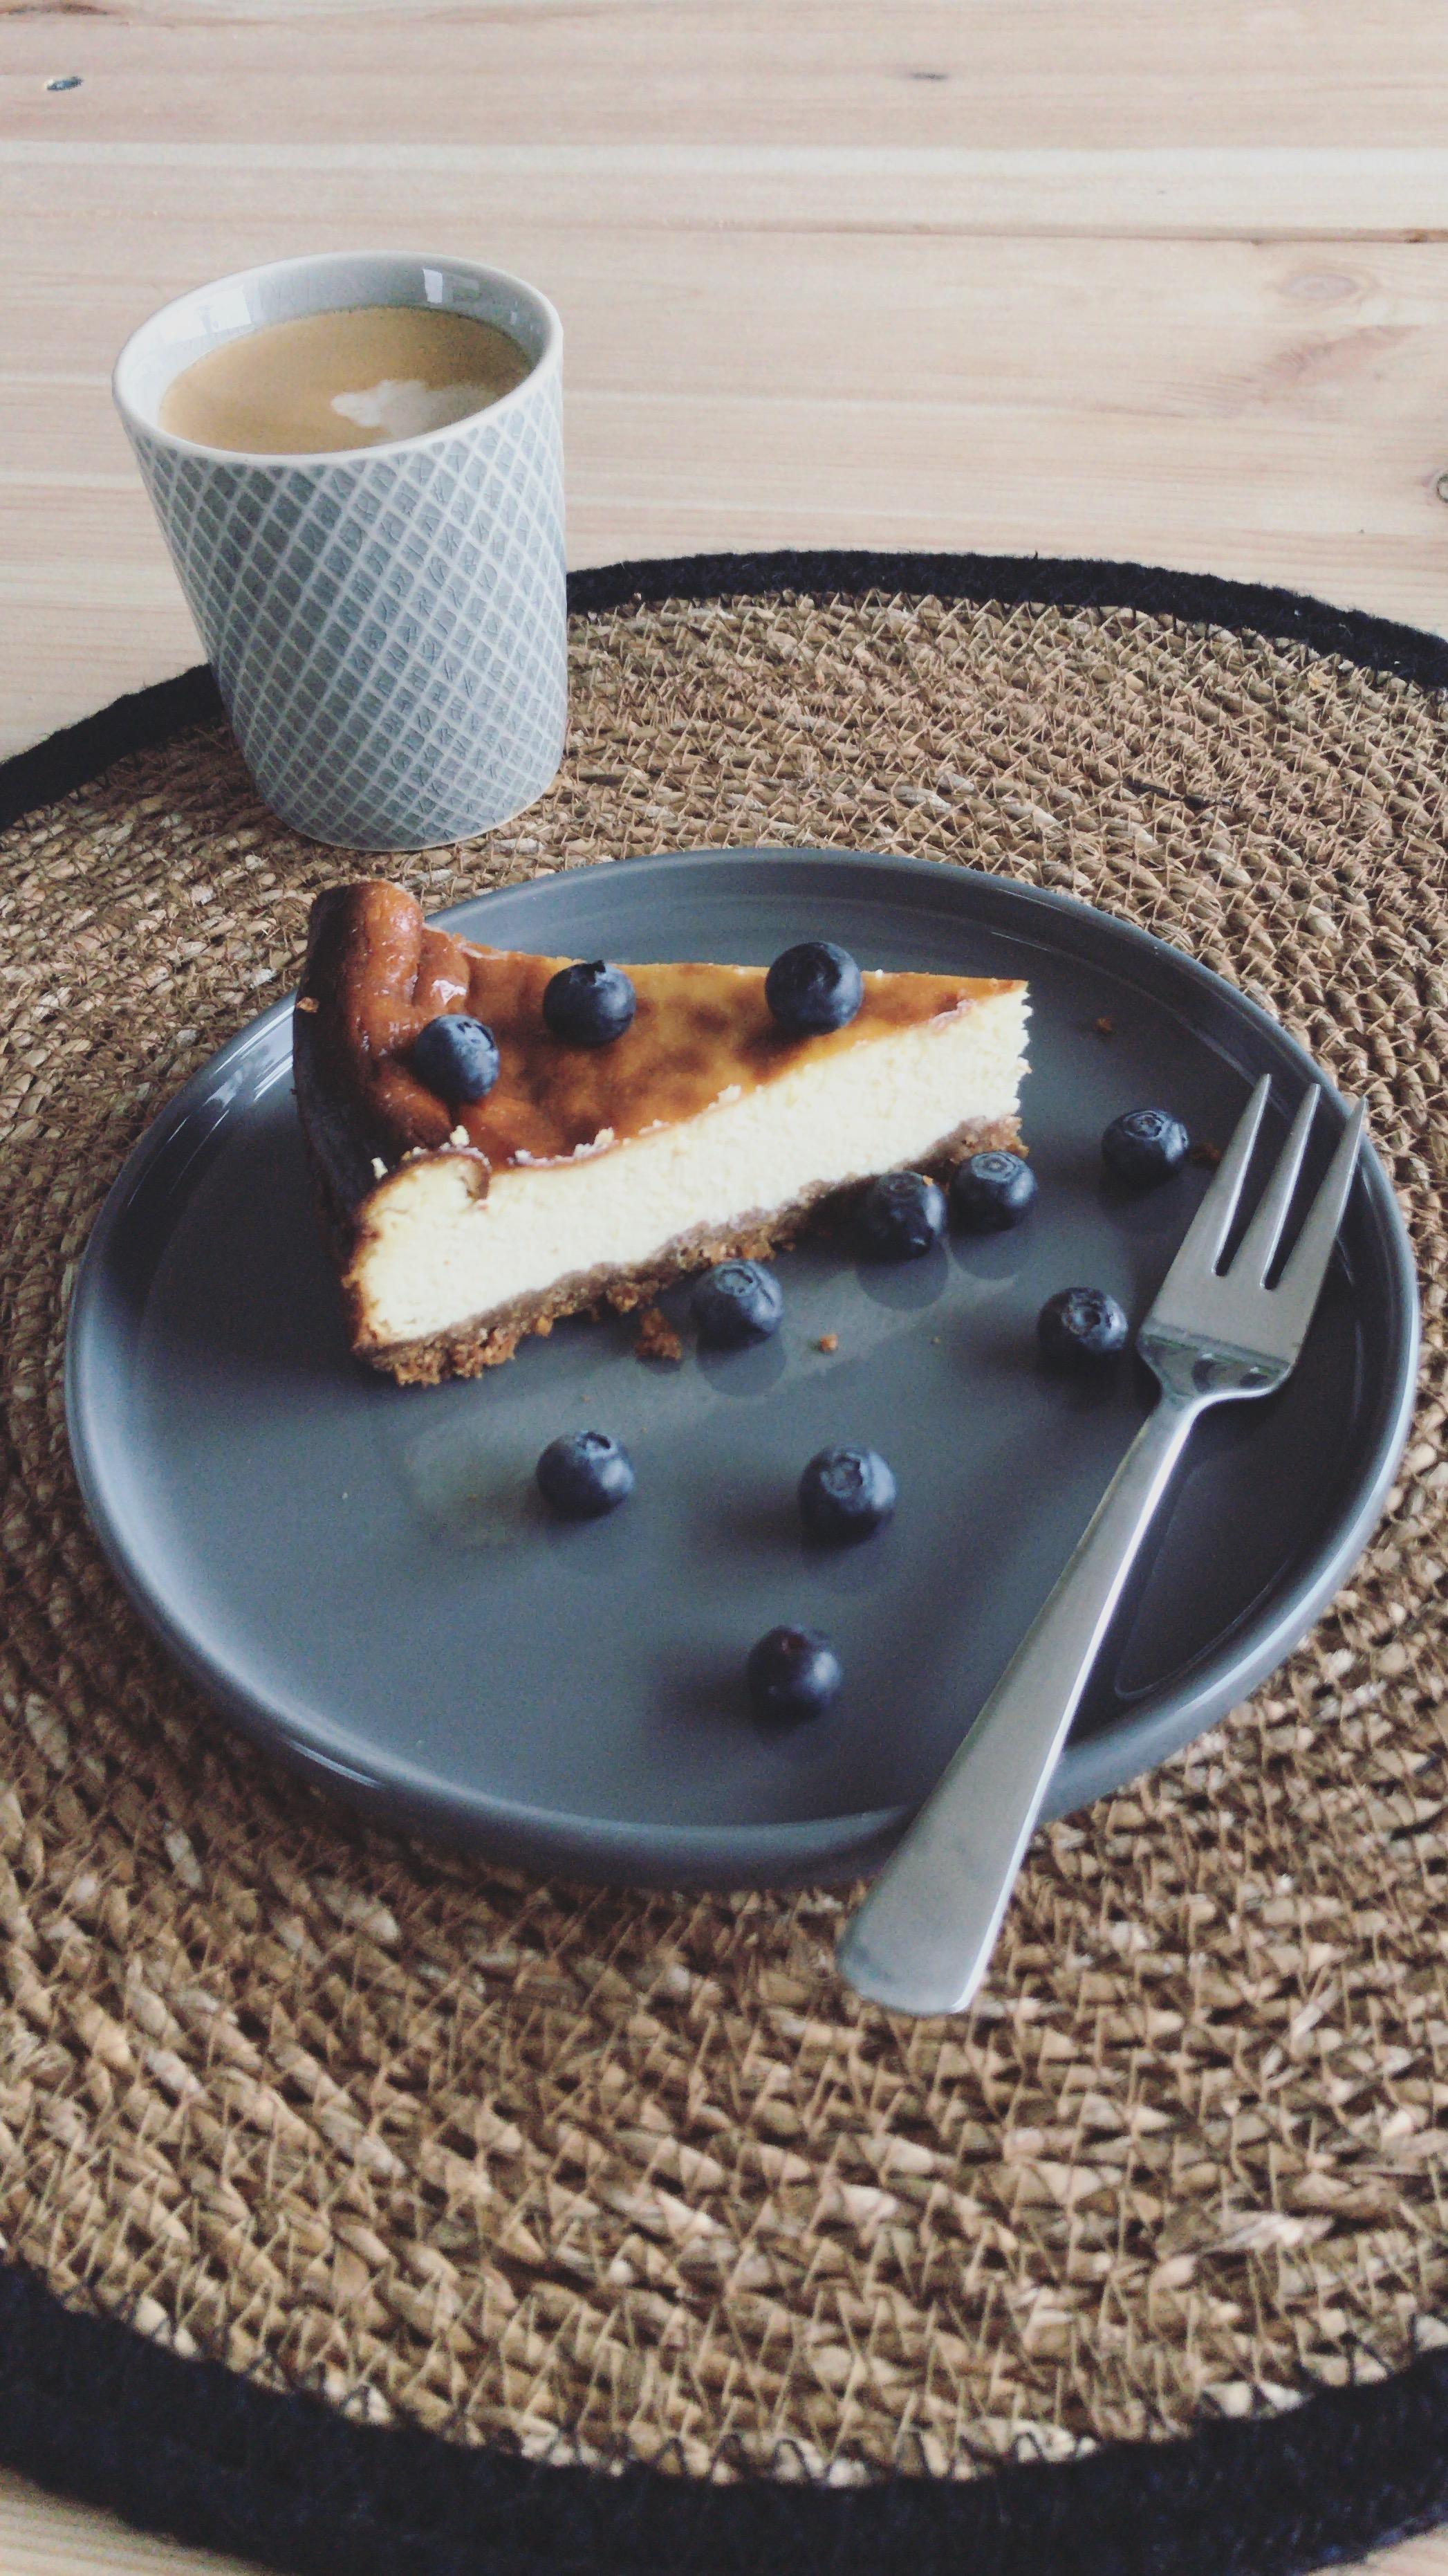 Hat da jemand Kuchen gesagt? #selbstgemacht #kaffee #diytisch #holz #grau #home